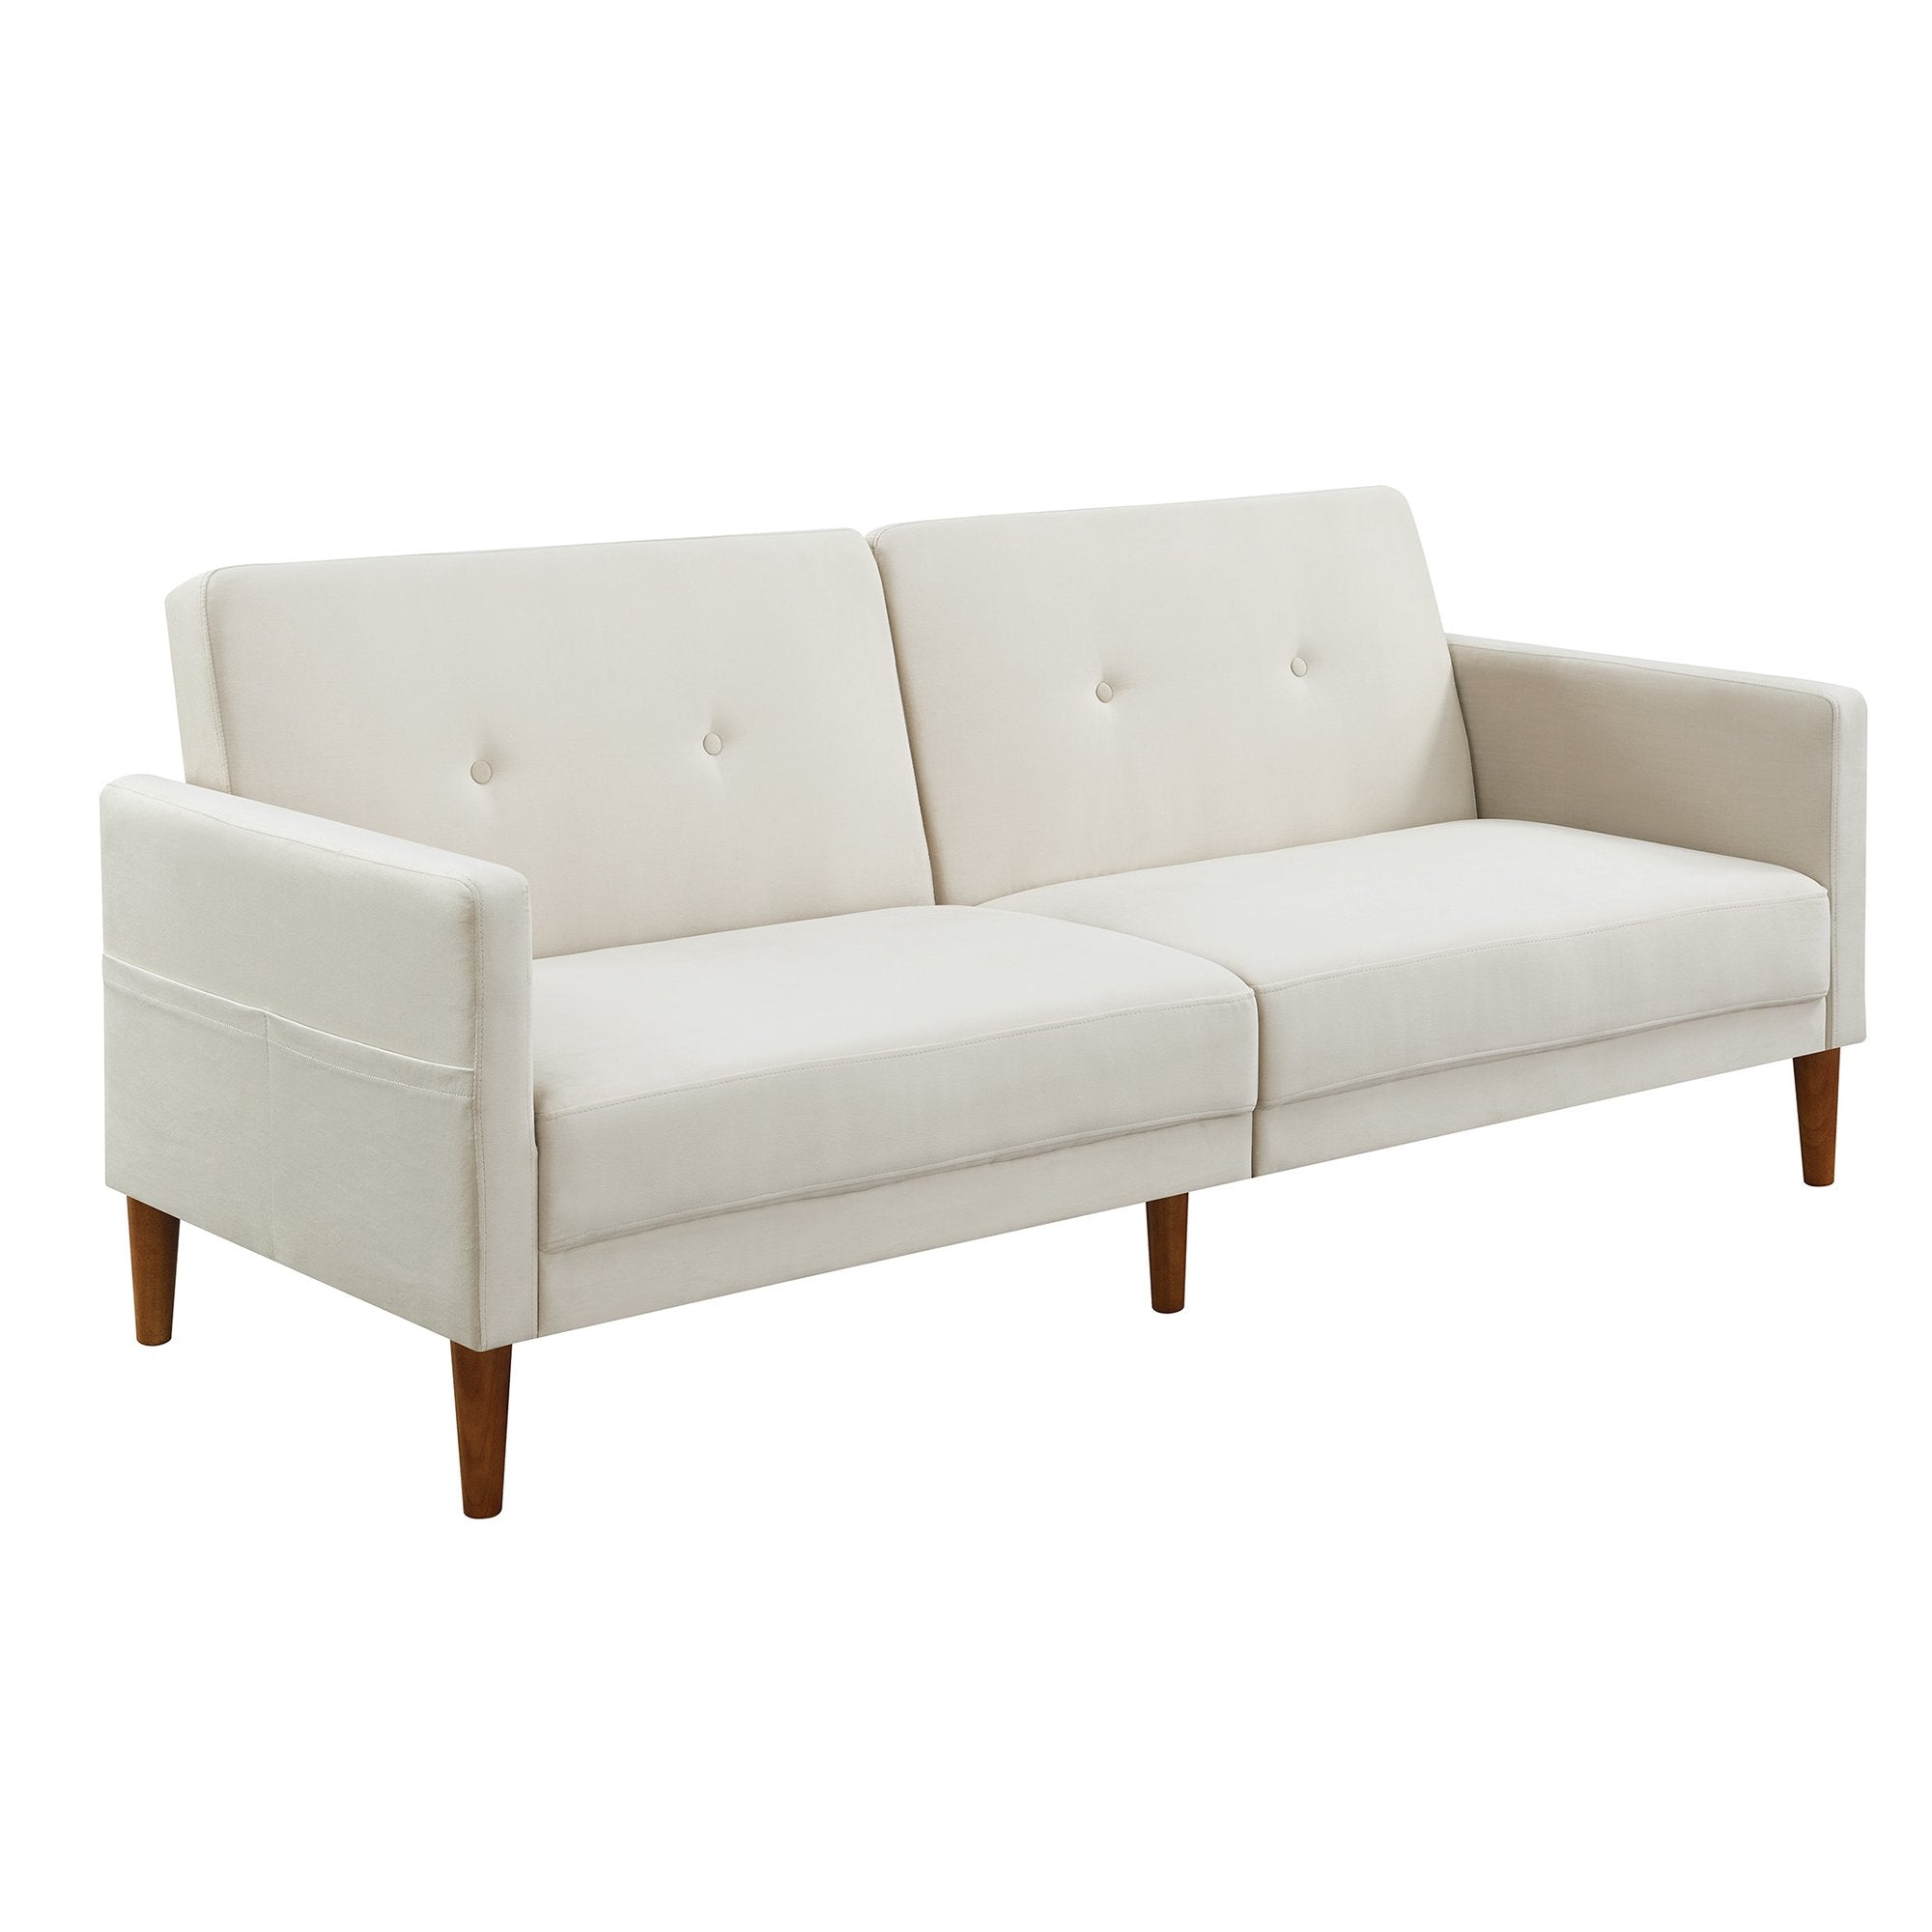 Velvet Upholstered Modern Convertible Folding Futon Sofa Bed